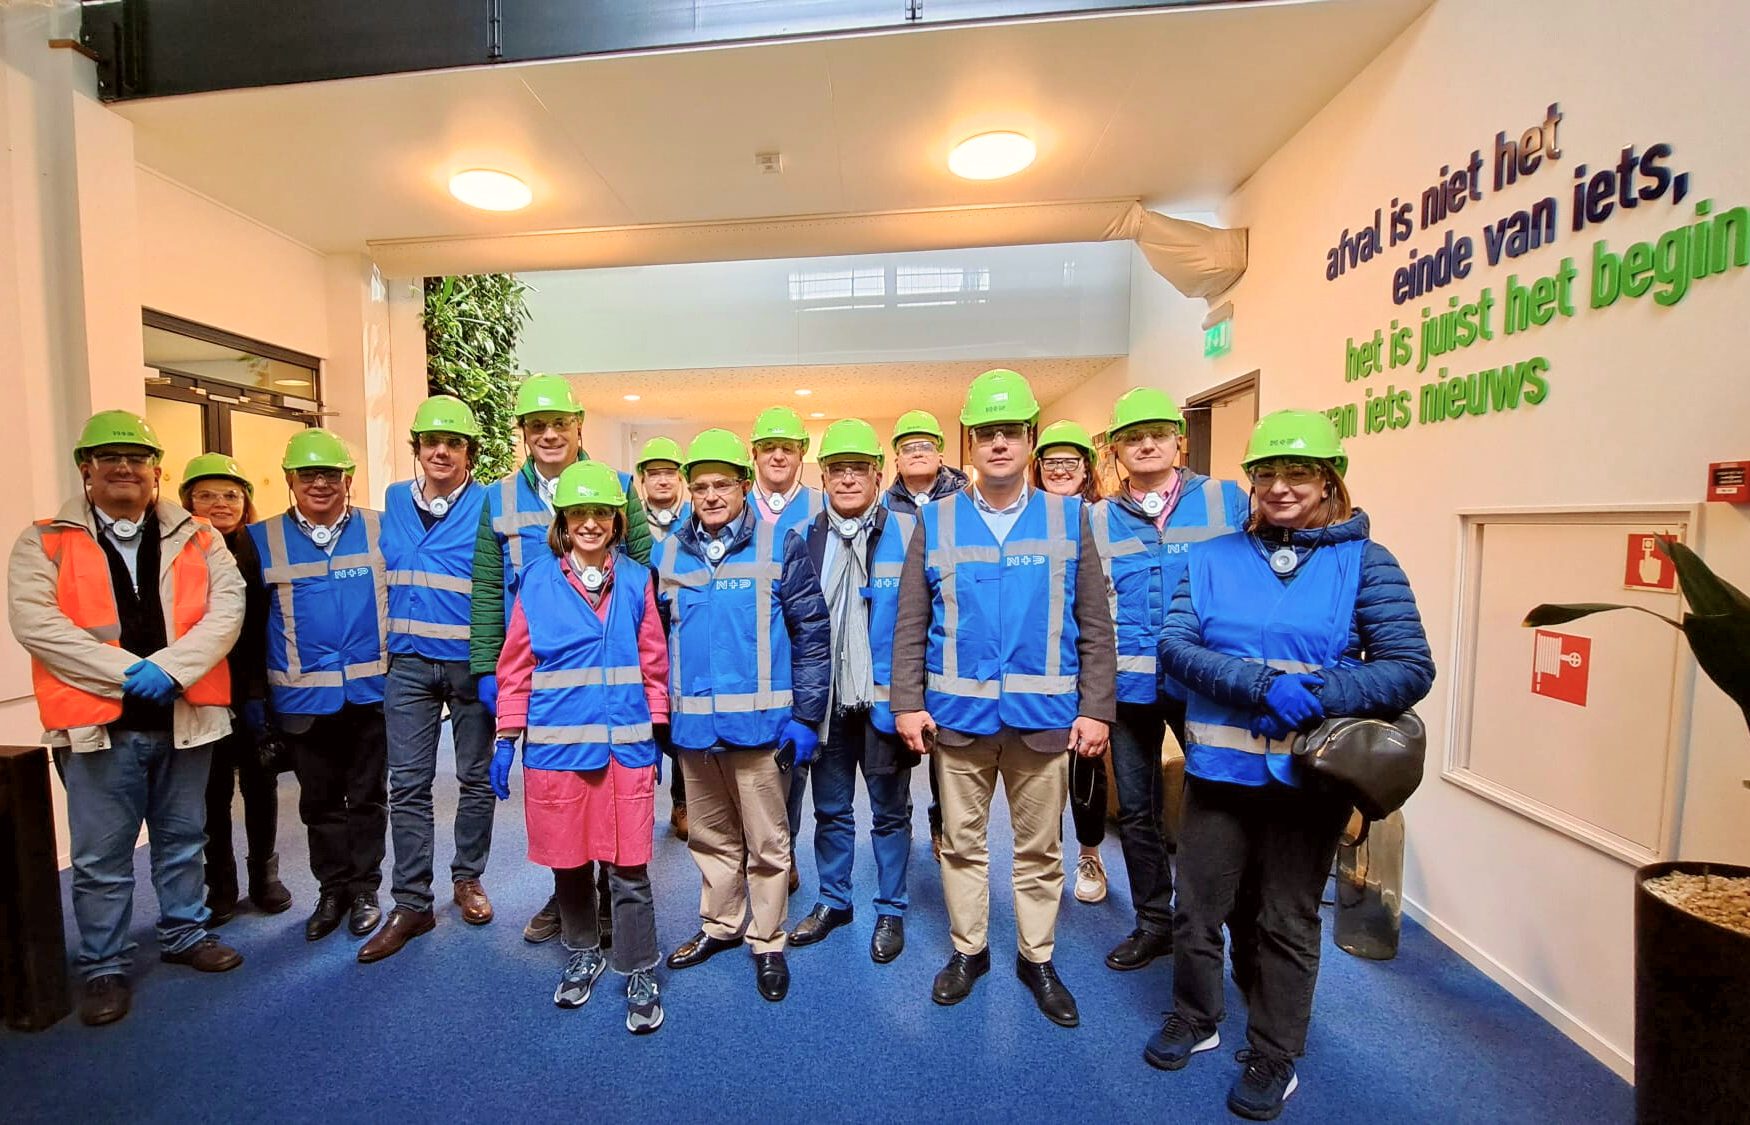 CIM Viseu Dão Lafões lidera projeto europeu de combate aos resíduos urbanos com visita à região neerlandesa de Almere